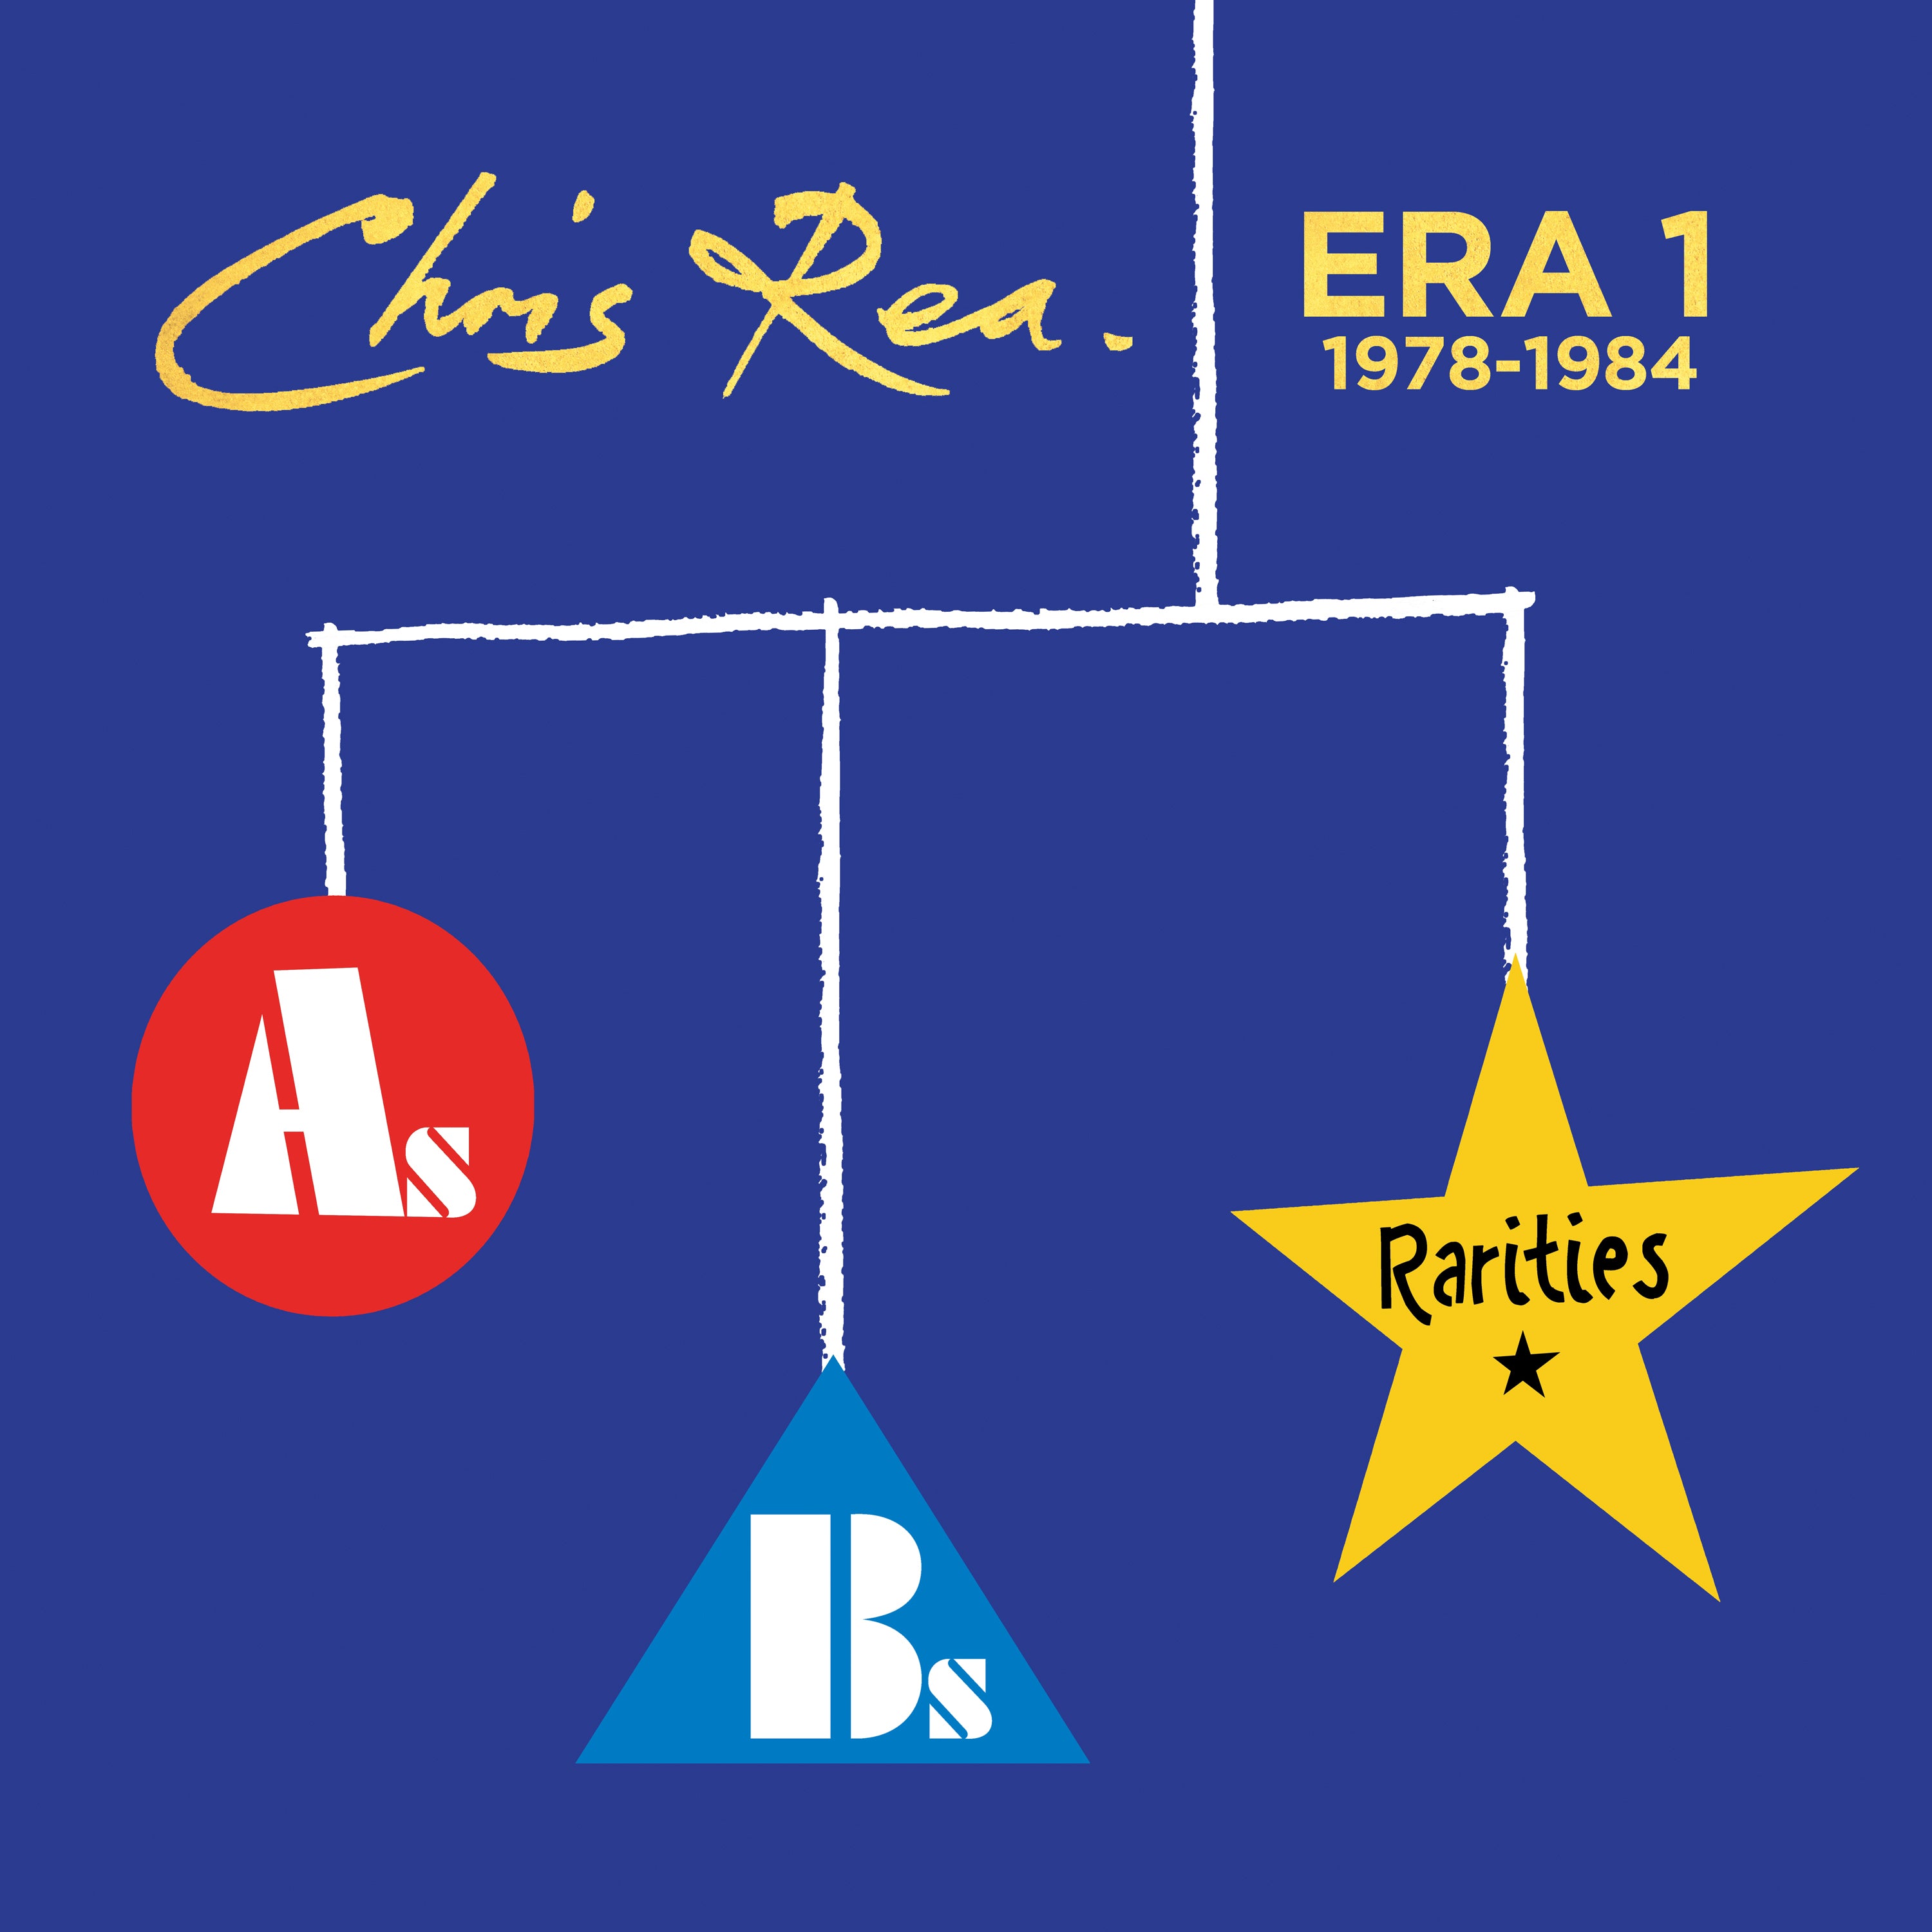 【輸入盤】ERA 1 (As, Bs & Rarities 1978 - 1984) [1LP]